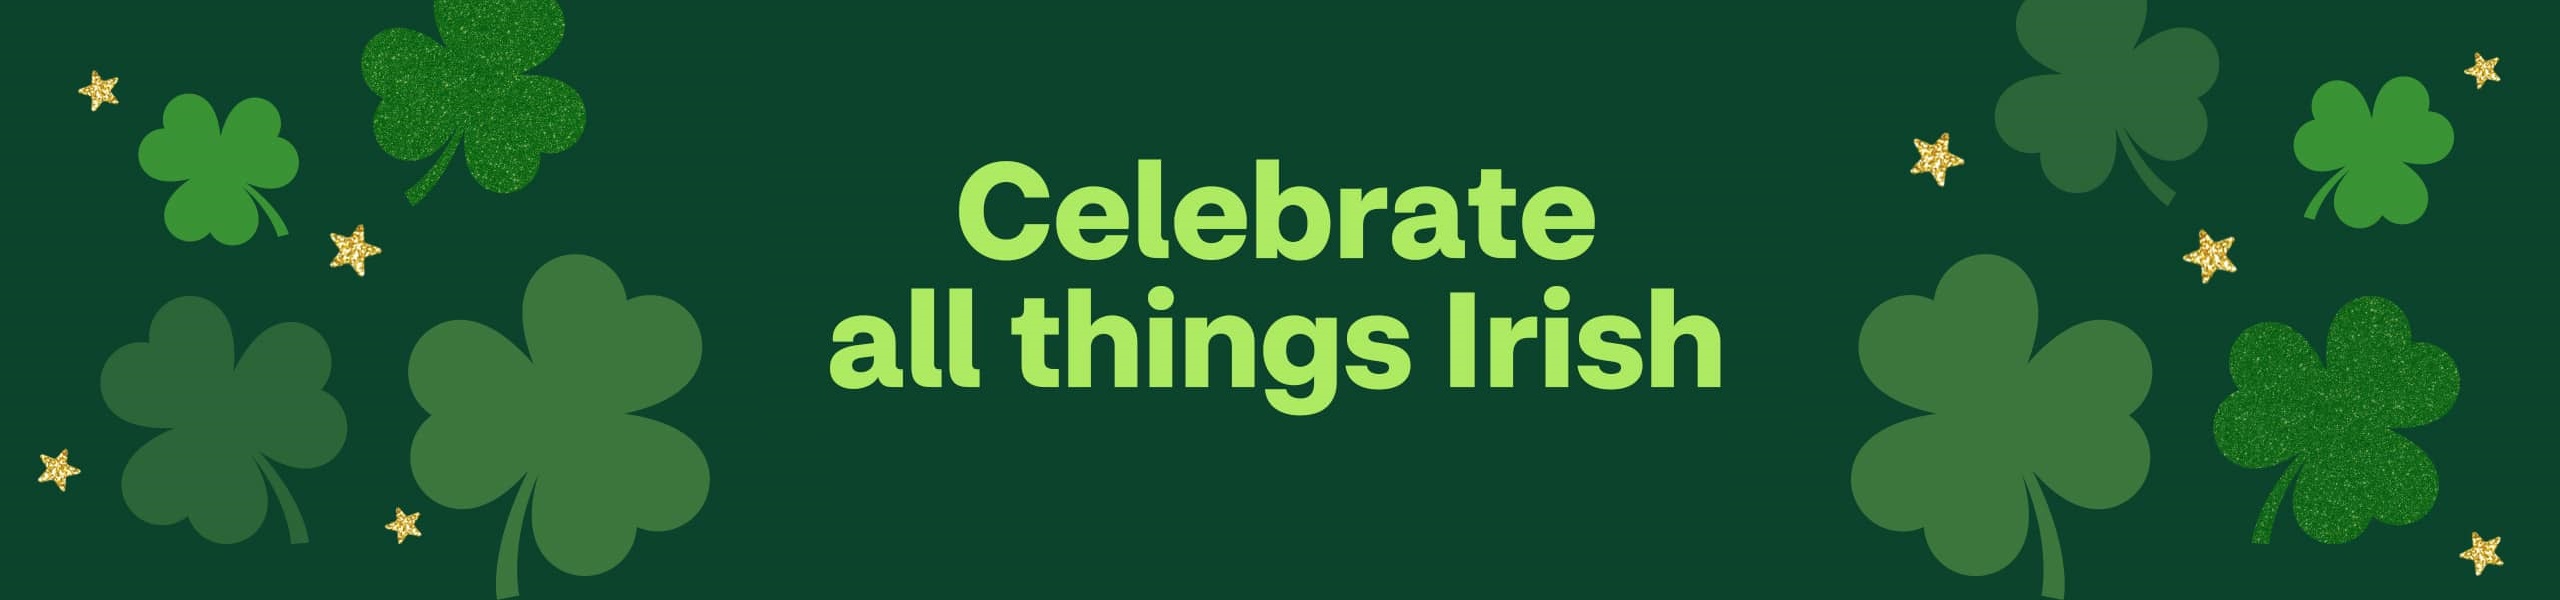 Celebrate all things Irish